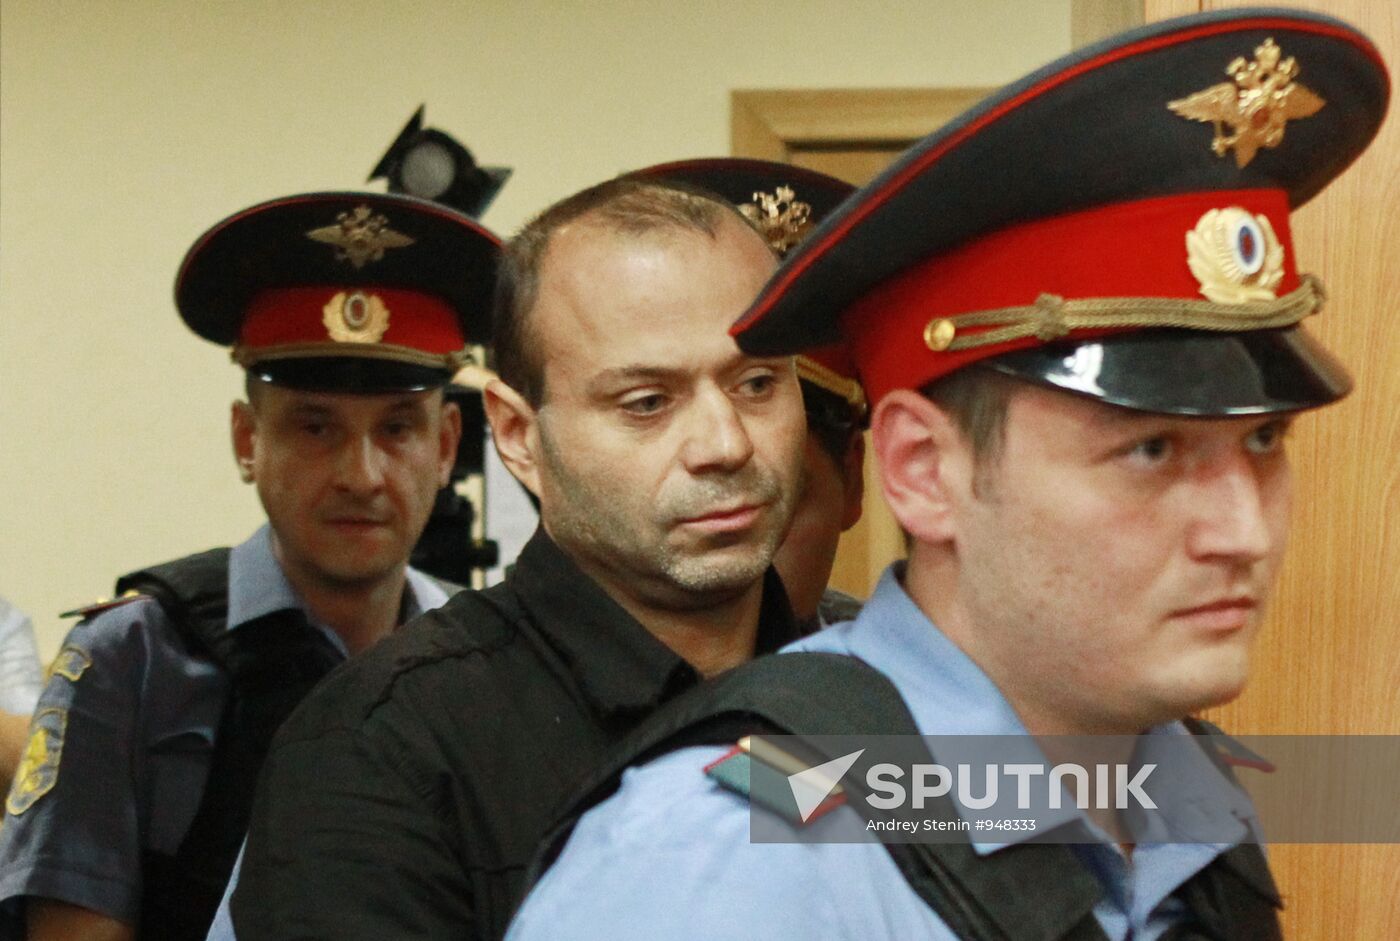 Court considers Dmitry Pavlyuchenkov's arrest